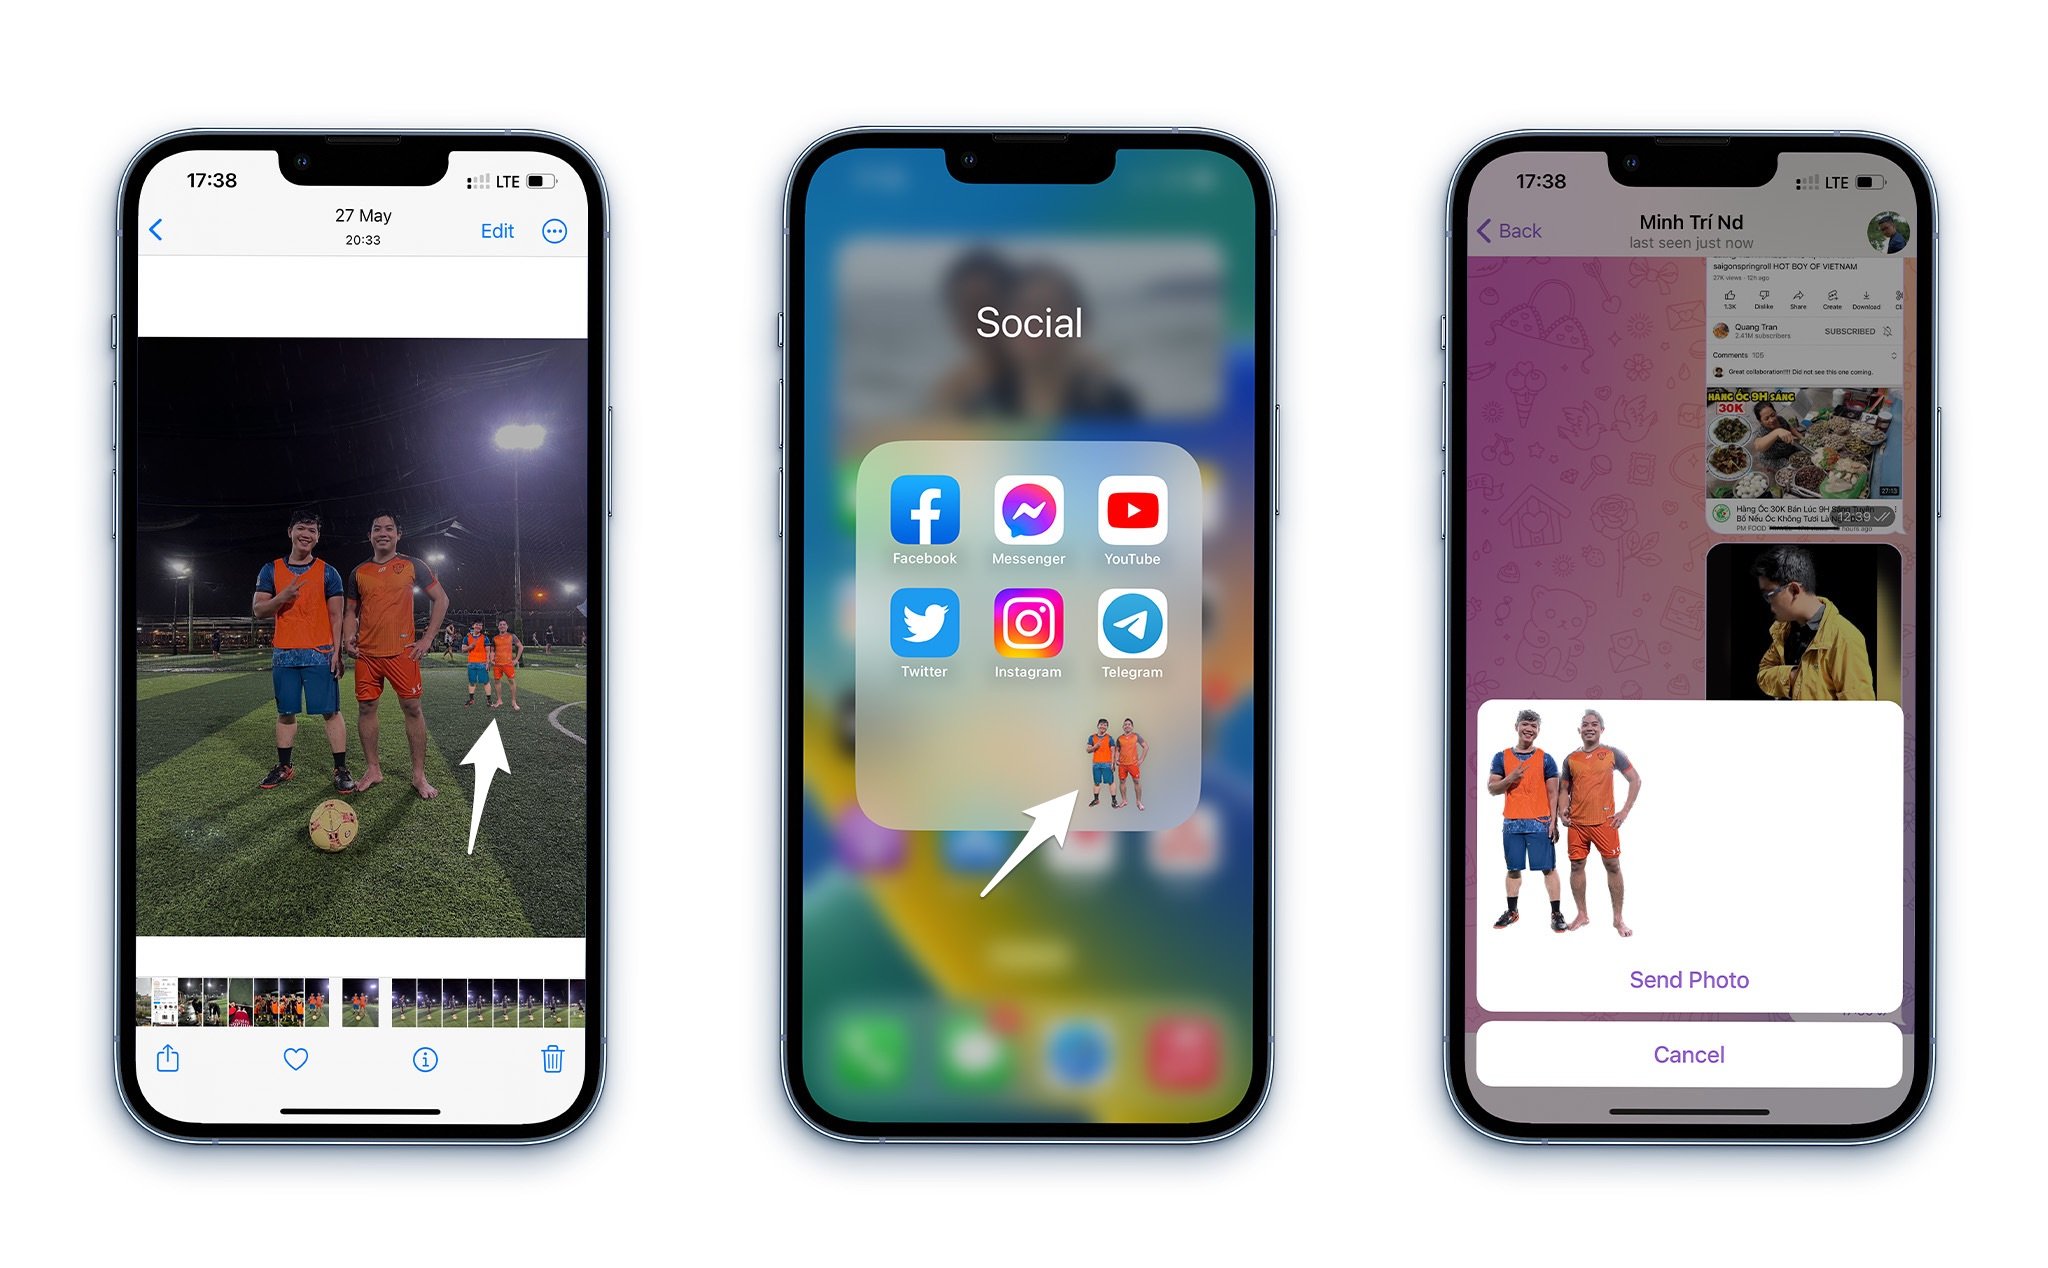 Tách chủ thể trên hình ảnh trên iOS 16: Với tính năng tách chủ thể trên hình ảnh cho phép bạn tách chủ thể khỏi hình ảnh nền chỉ bằng một cú nhấp, tạo điều kiện cho bạn chỉnh sửa ảnh một cách linh hoạt và dễ dàng. Bạn có thể dễ dàng thêm hiệu ứng và chuẩn bị cho việc chia sẻ với bạn bè qua mạng xã hội.